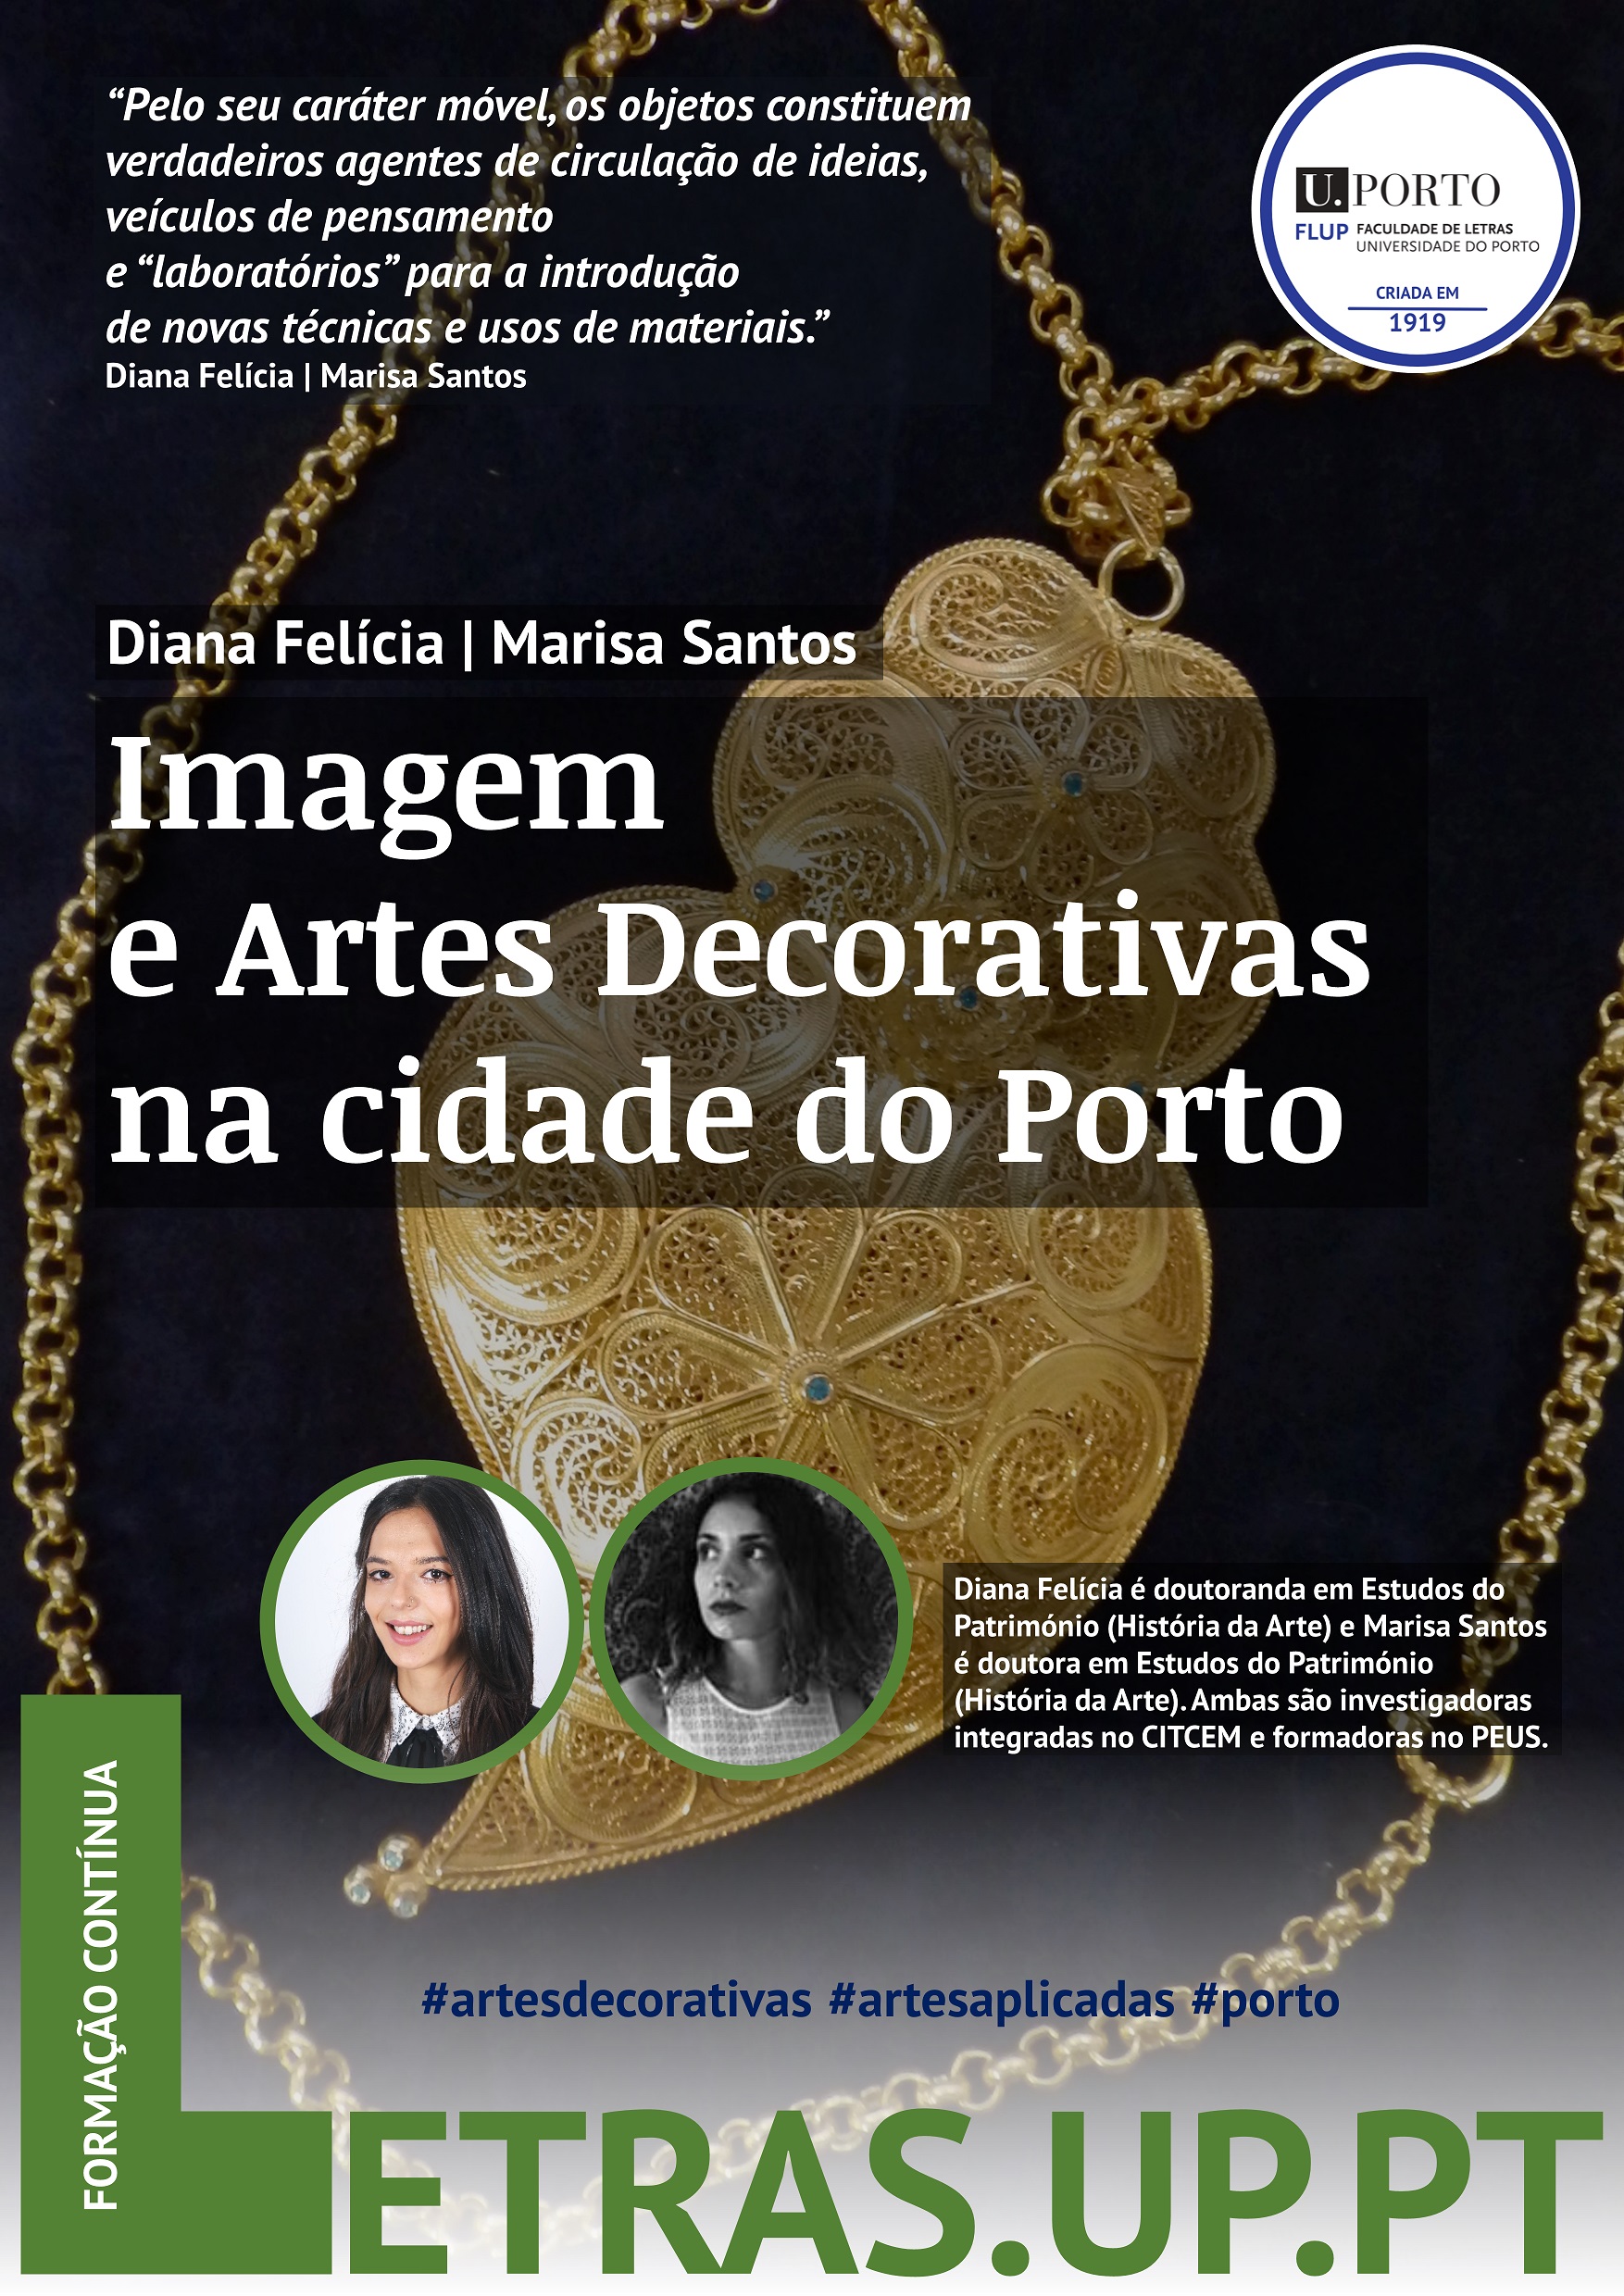 Imagem e Artes decorativas na cidade do Porto